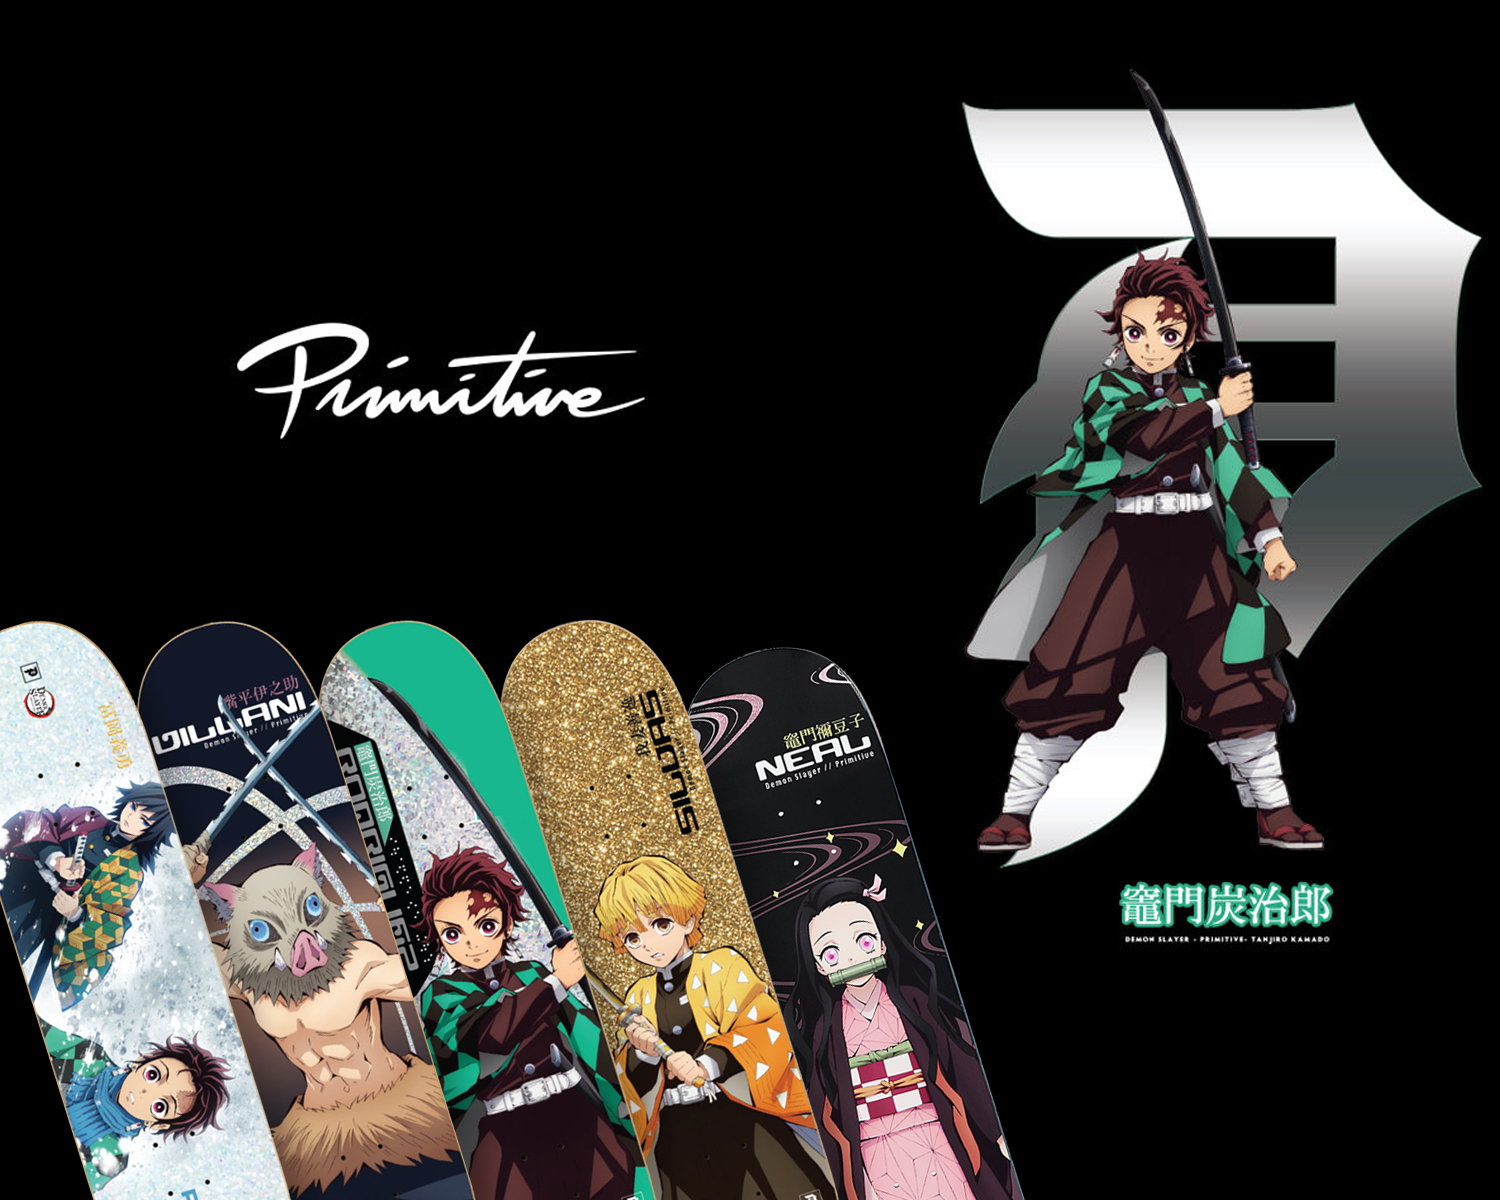 Skate completo Tanjiro Anime